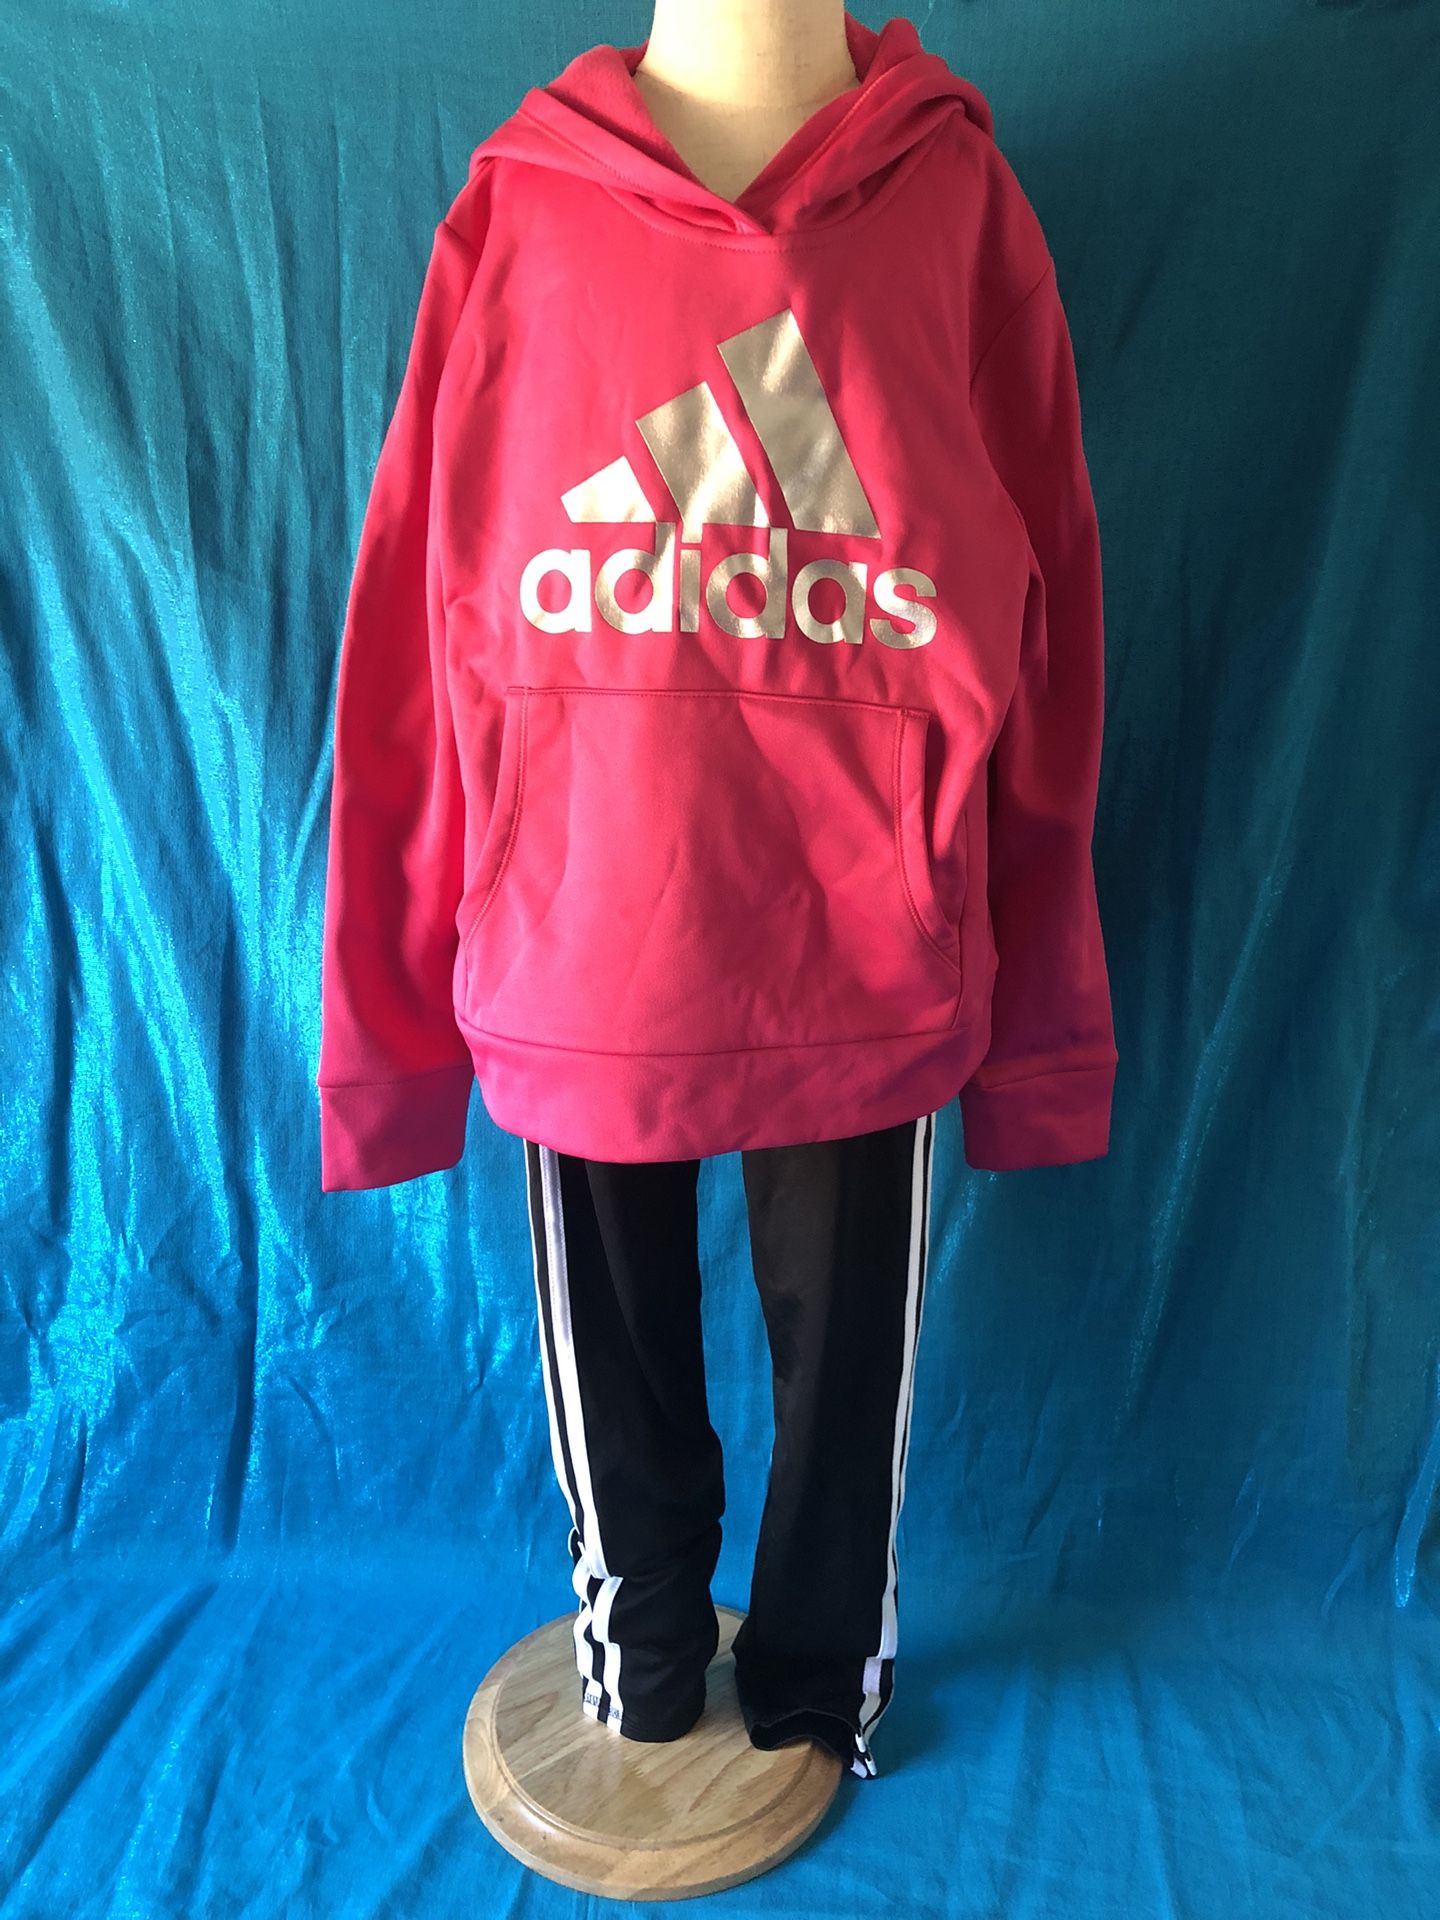 Adidas Sweatshirt & Leggings - Size 10/12